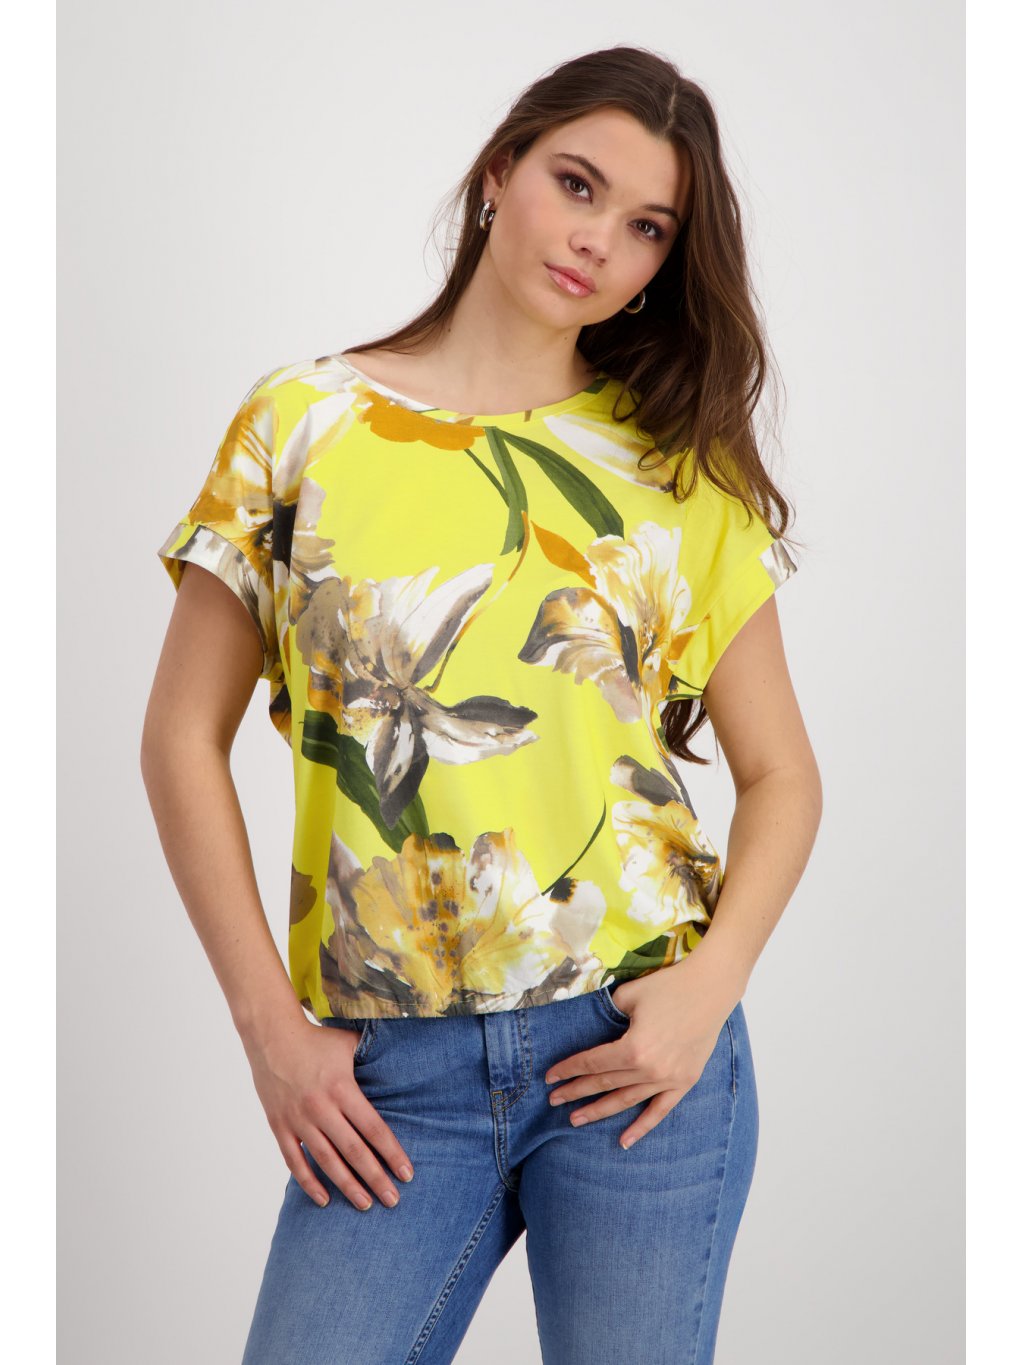 Tričko Monari 8537 žluté s květy v béžové